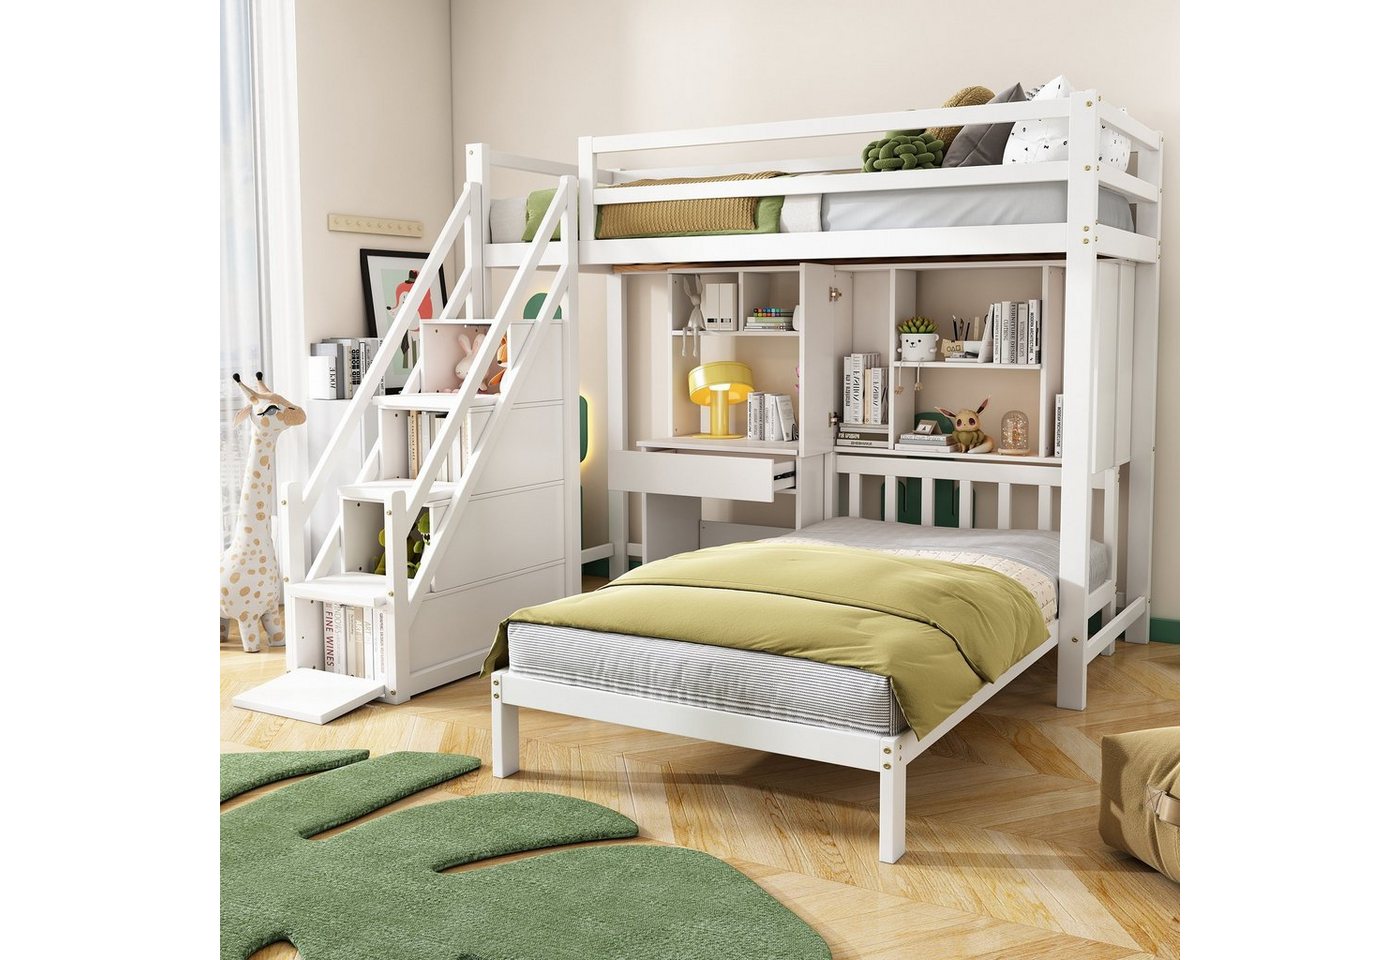 Celya Kinderbett Doppelbett, multifunktionales Kinderbett, Stauraumfunktion 90×200, mit Schreibtisch und Regale, mit Lattenrost, Etagenbett, ausreichend Stauraum von Celya